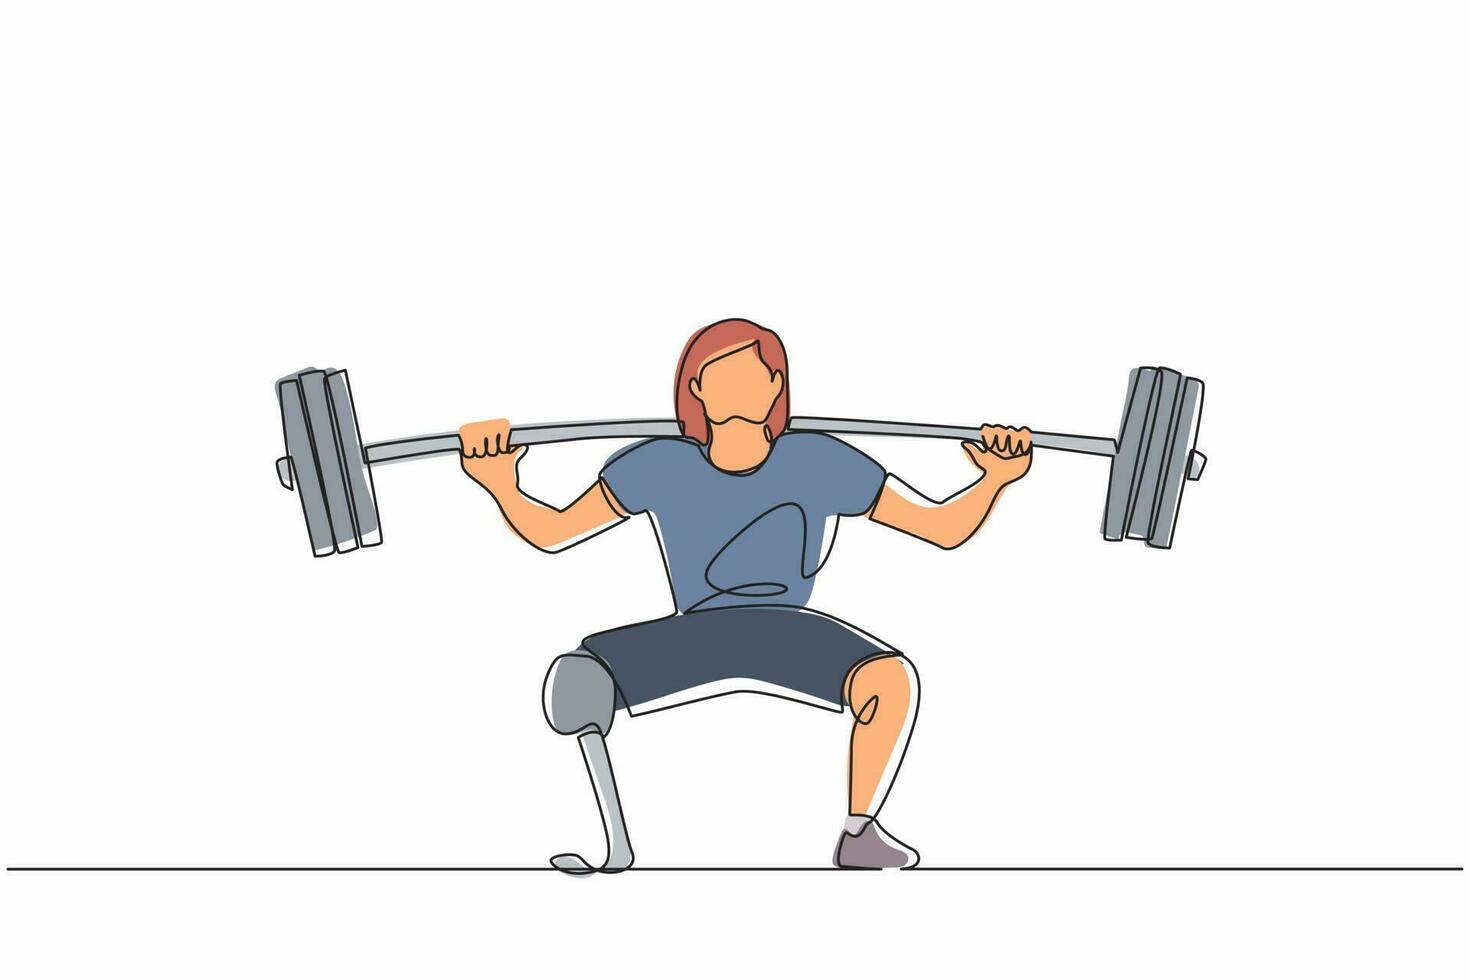 Einzelne einzeilige Zeichnung behinderte Gewichtheberin mit amputierten Beinen. athletisches gewichtheben training mit langhantelmuskeln sport starke frau schöne körperfitness. Designvektor mit durchgehender Linie vektor